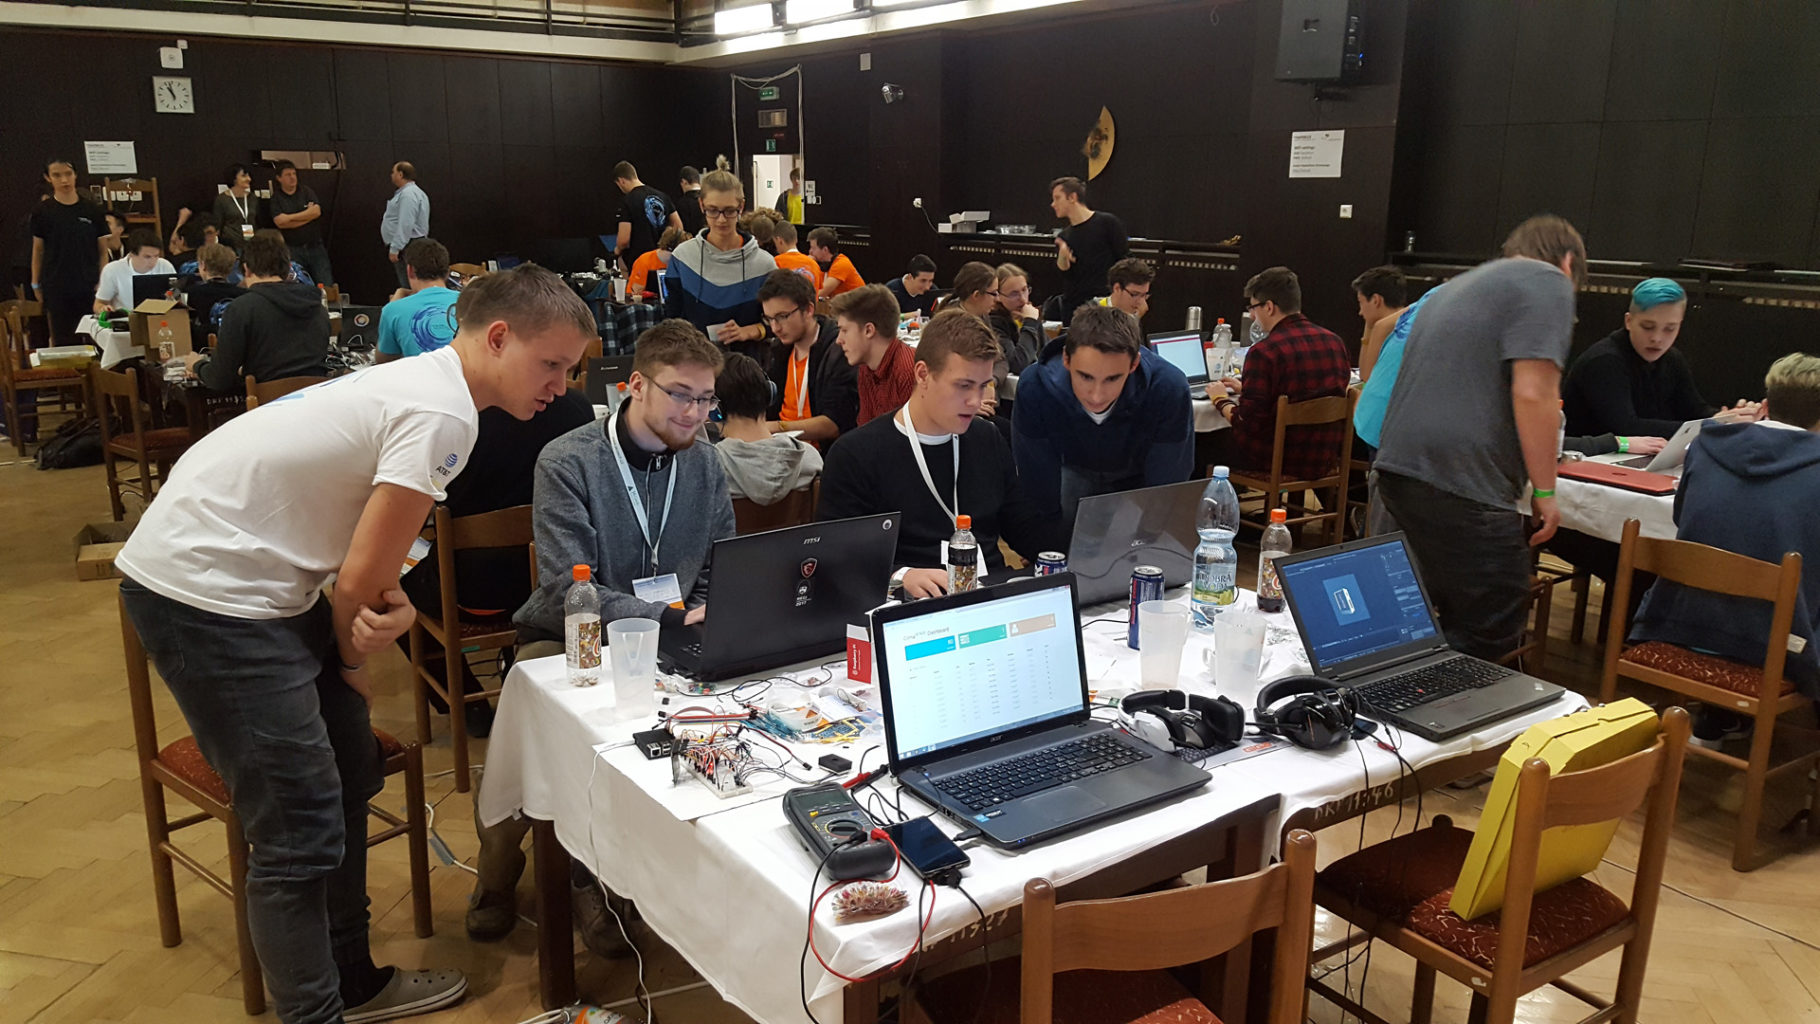 Junior Hackathon 2017 Brno